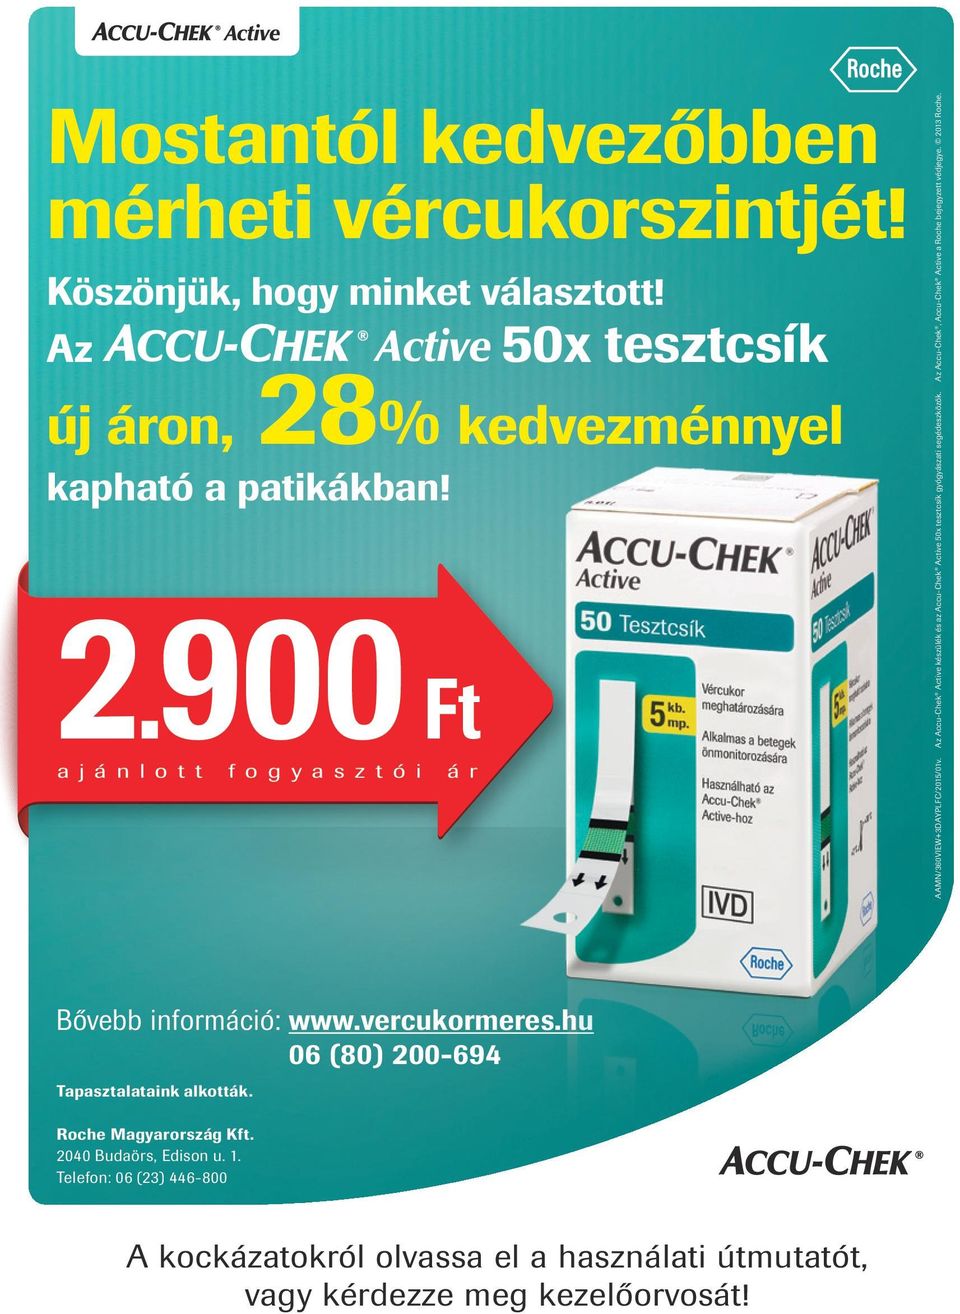 Az Accu-Chek Active készülék és az Accu-Chek Active 50x tesztcsík gyógyászati segédeszközök. Az Accu-Chek, Accu-Chek Active a Roche bejegyzett védjegye.